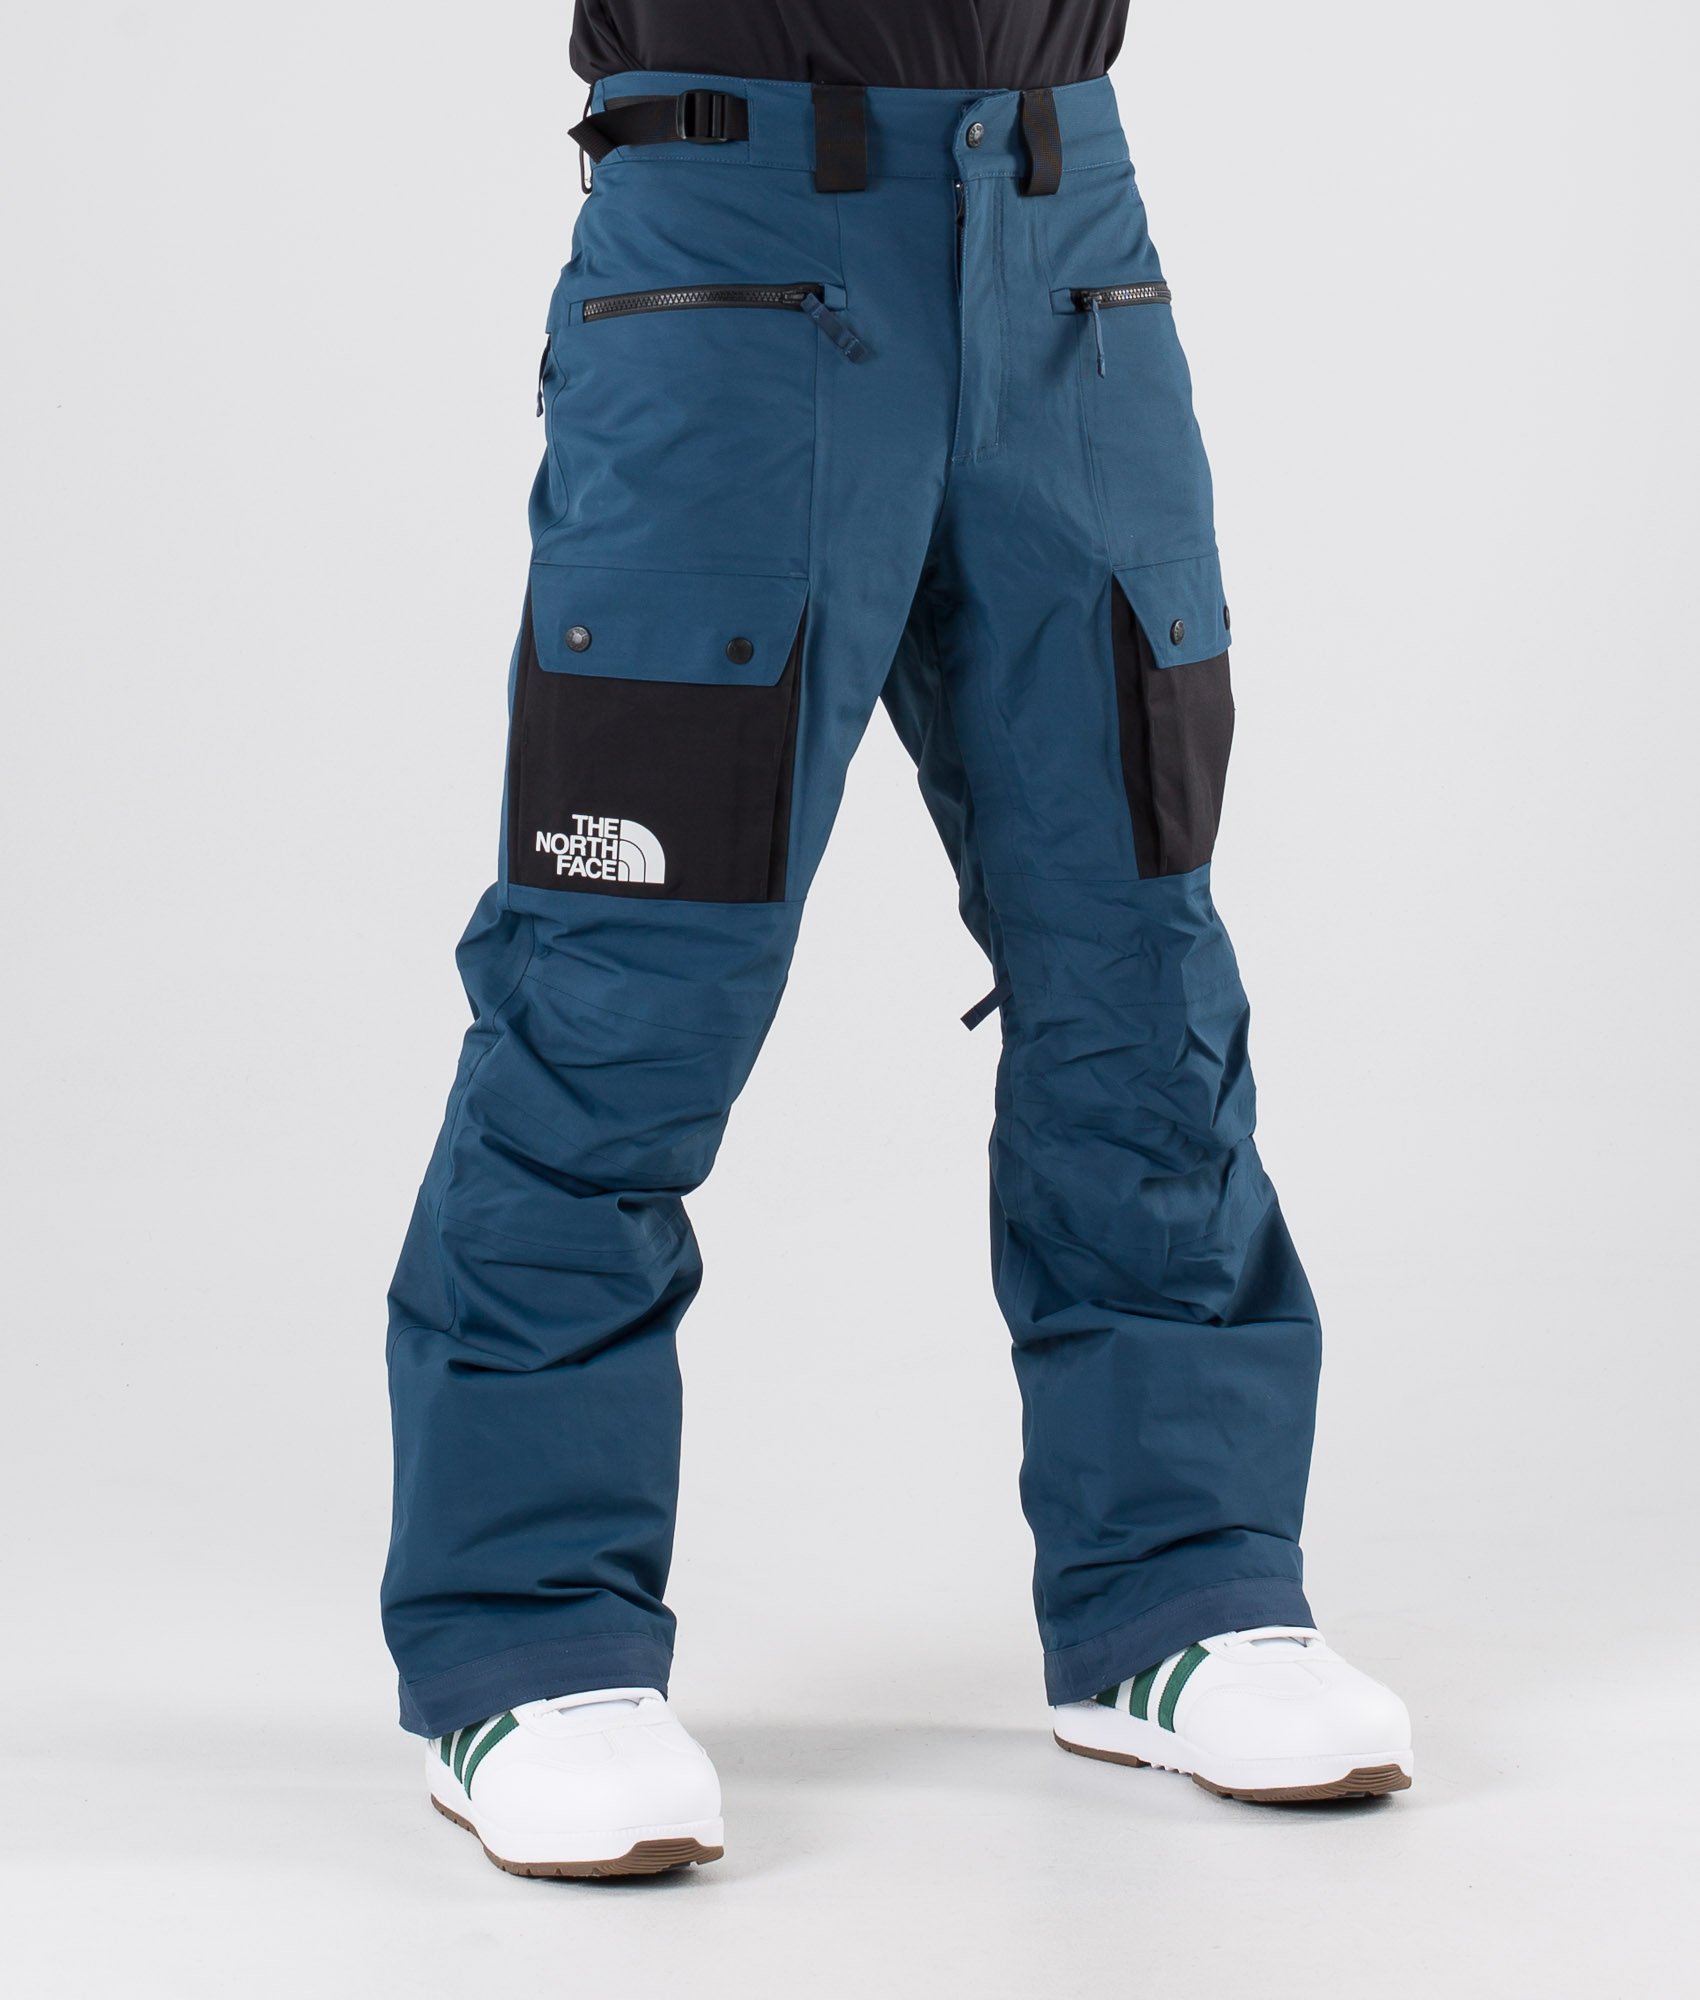 north face snowboard pants